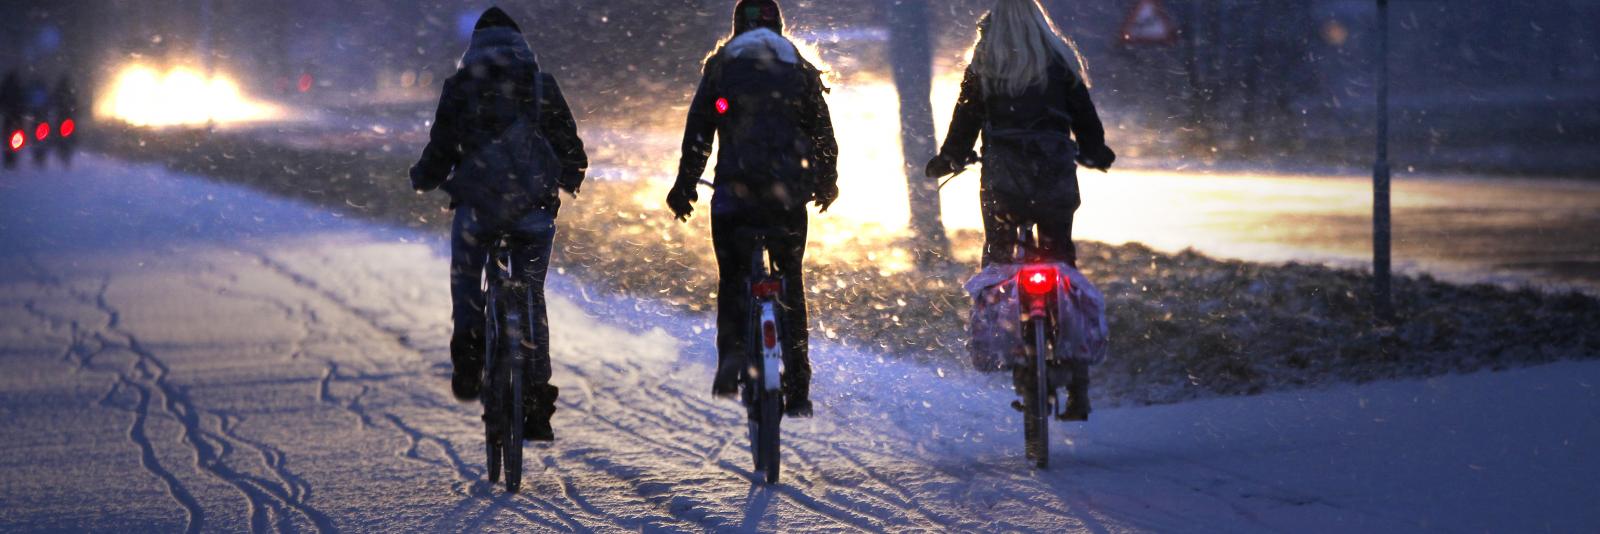 Politie aan ouders: "Controleer fietsverlichting van je kind" NH Nieuws